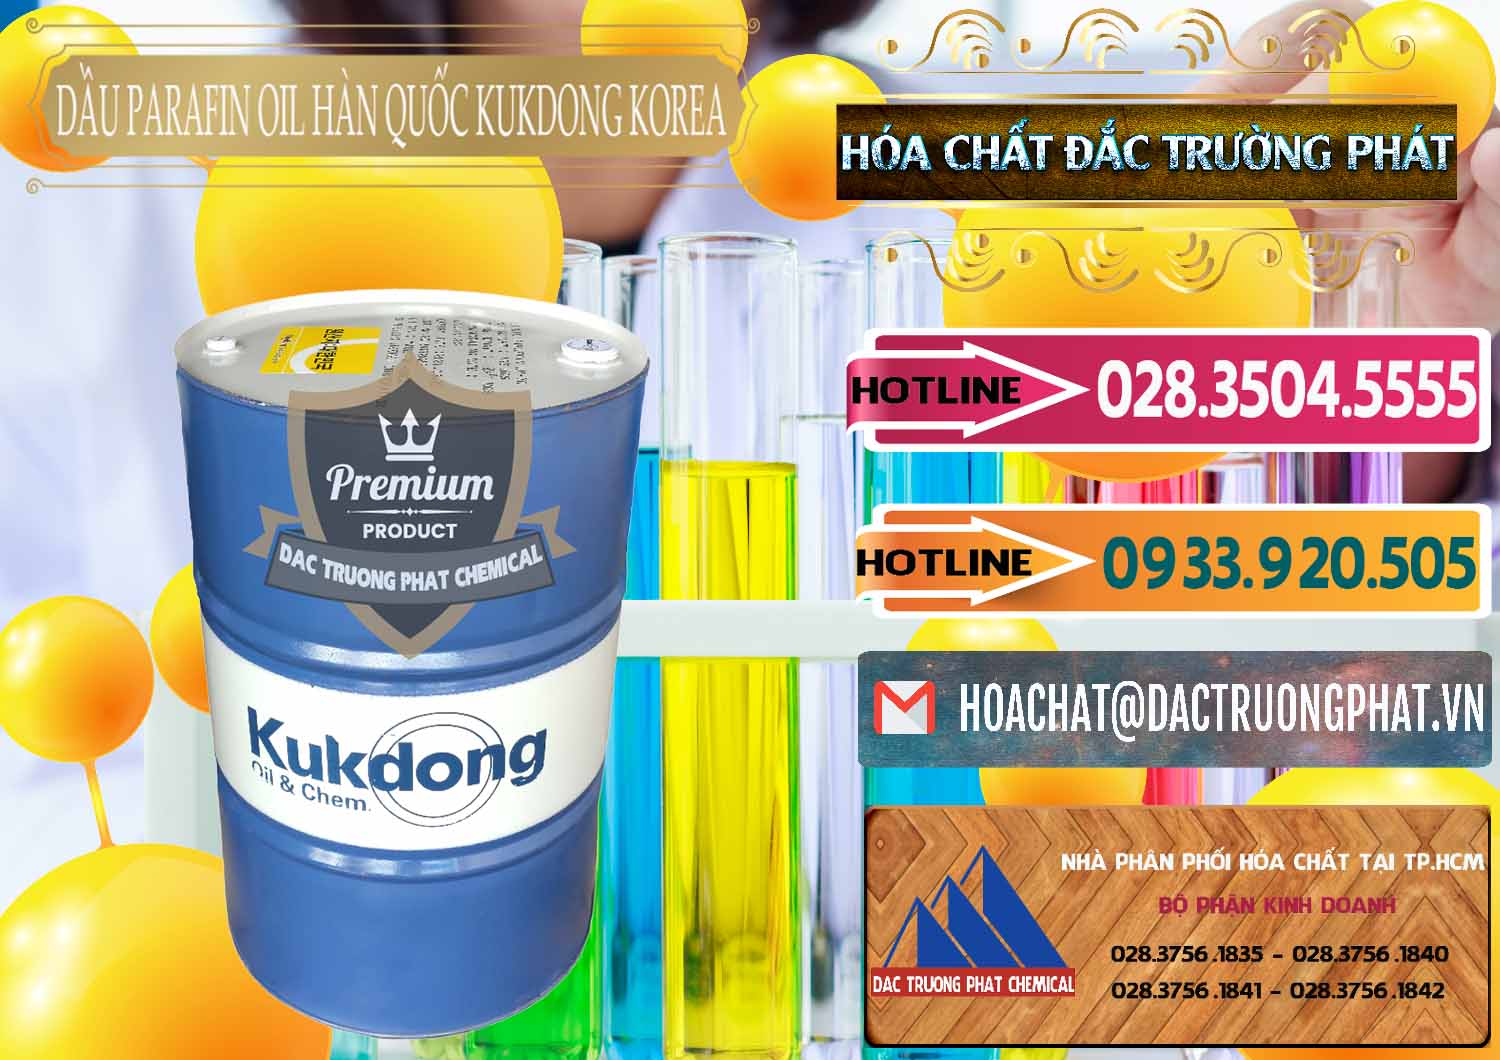 Bán và cung cấp Dầu Parafin Oil Hàn Quốc Korea Kukdong - 0060 - Chuyên nhập khẩu - cung cấp hóa chất tại TP.HCM - dactruongphat.vn